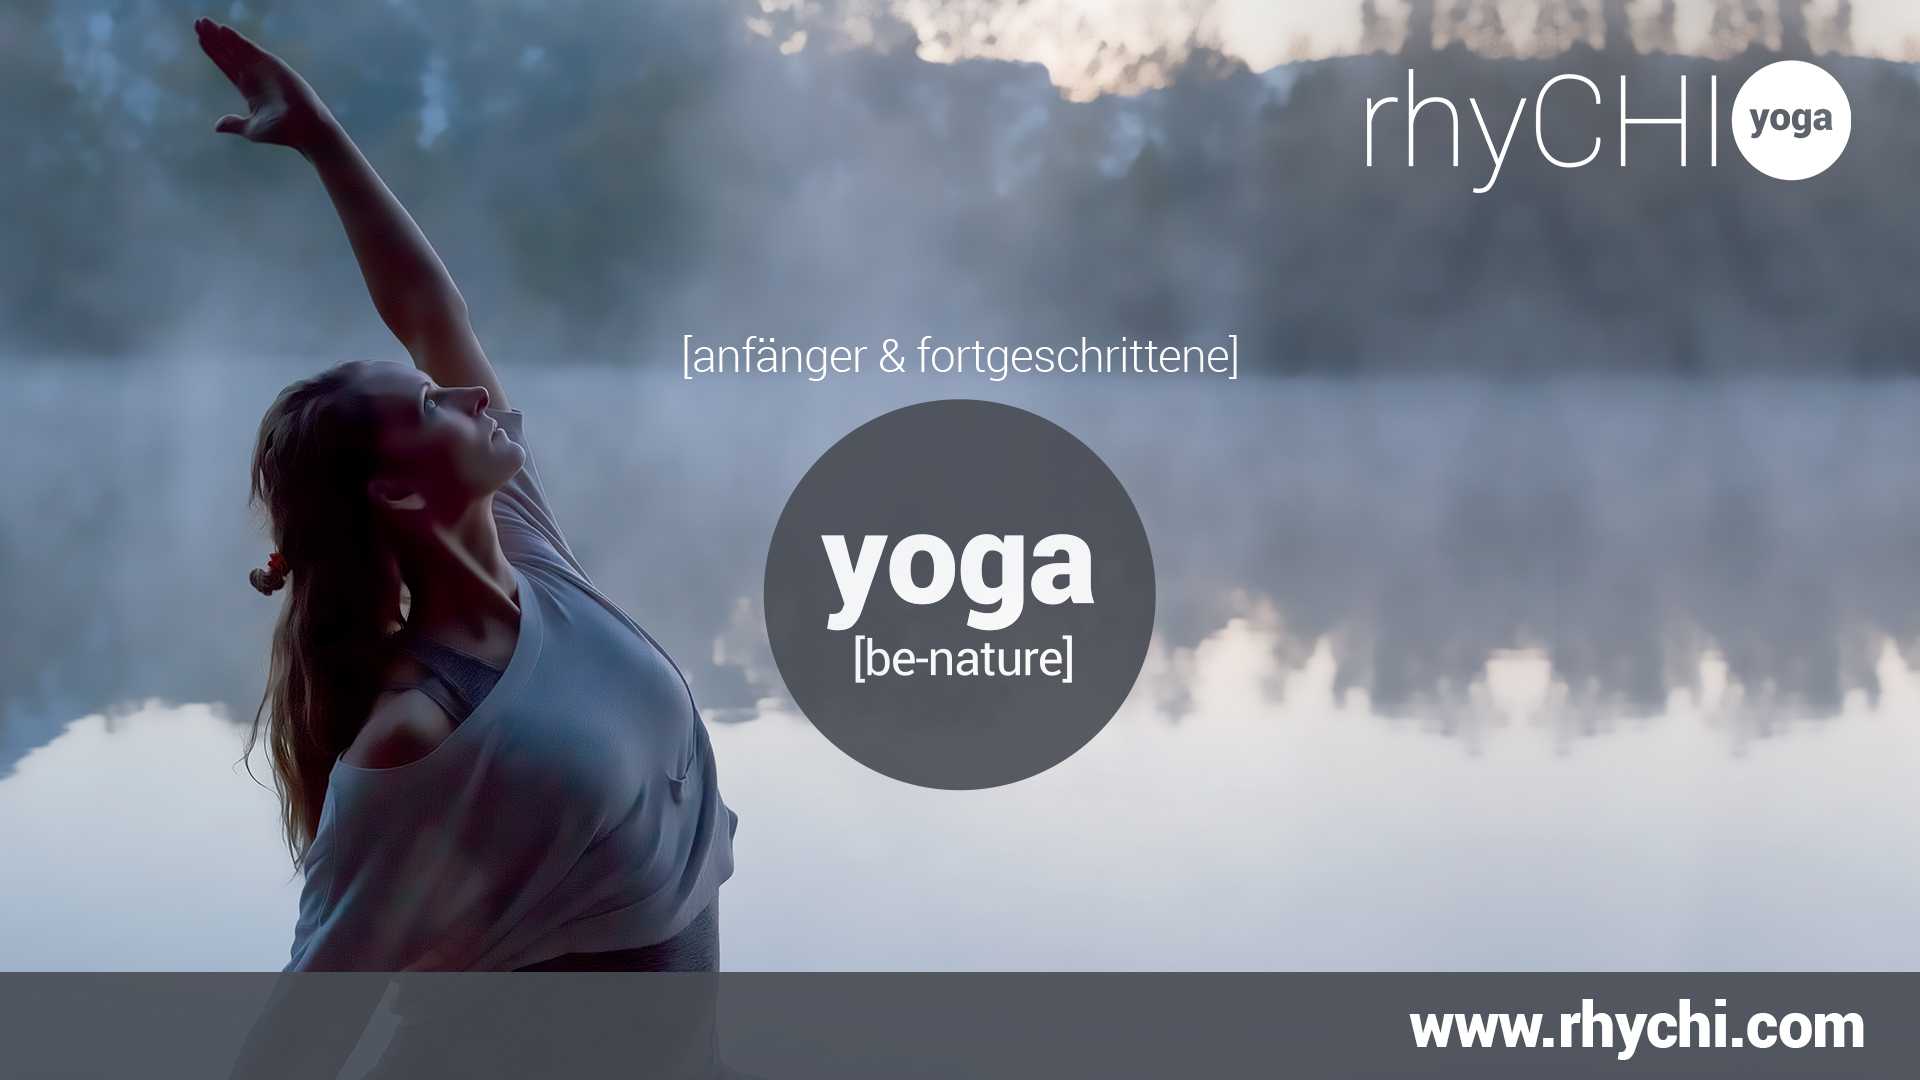 Rhychi Yoga